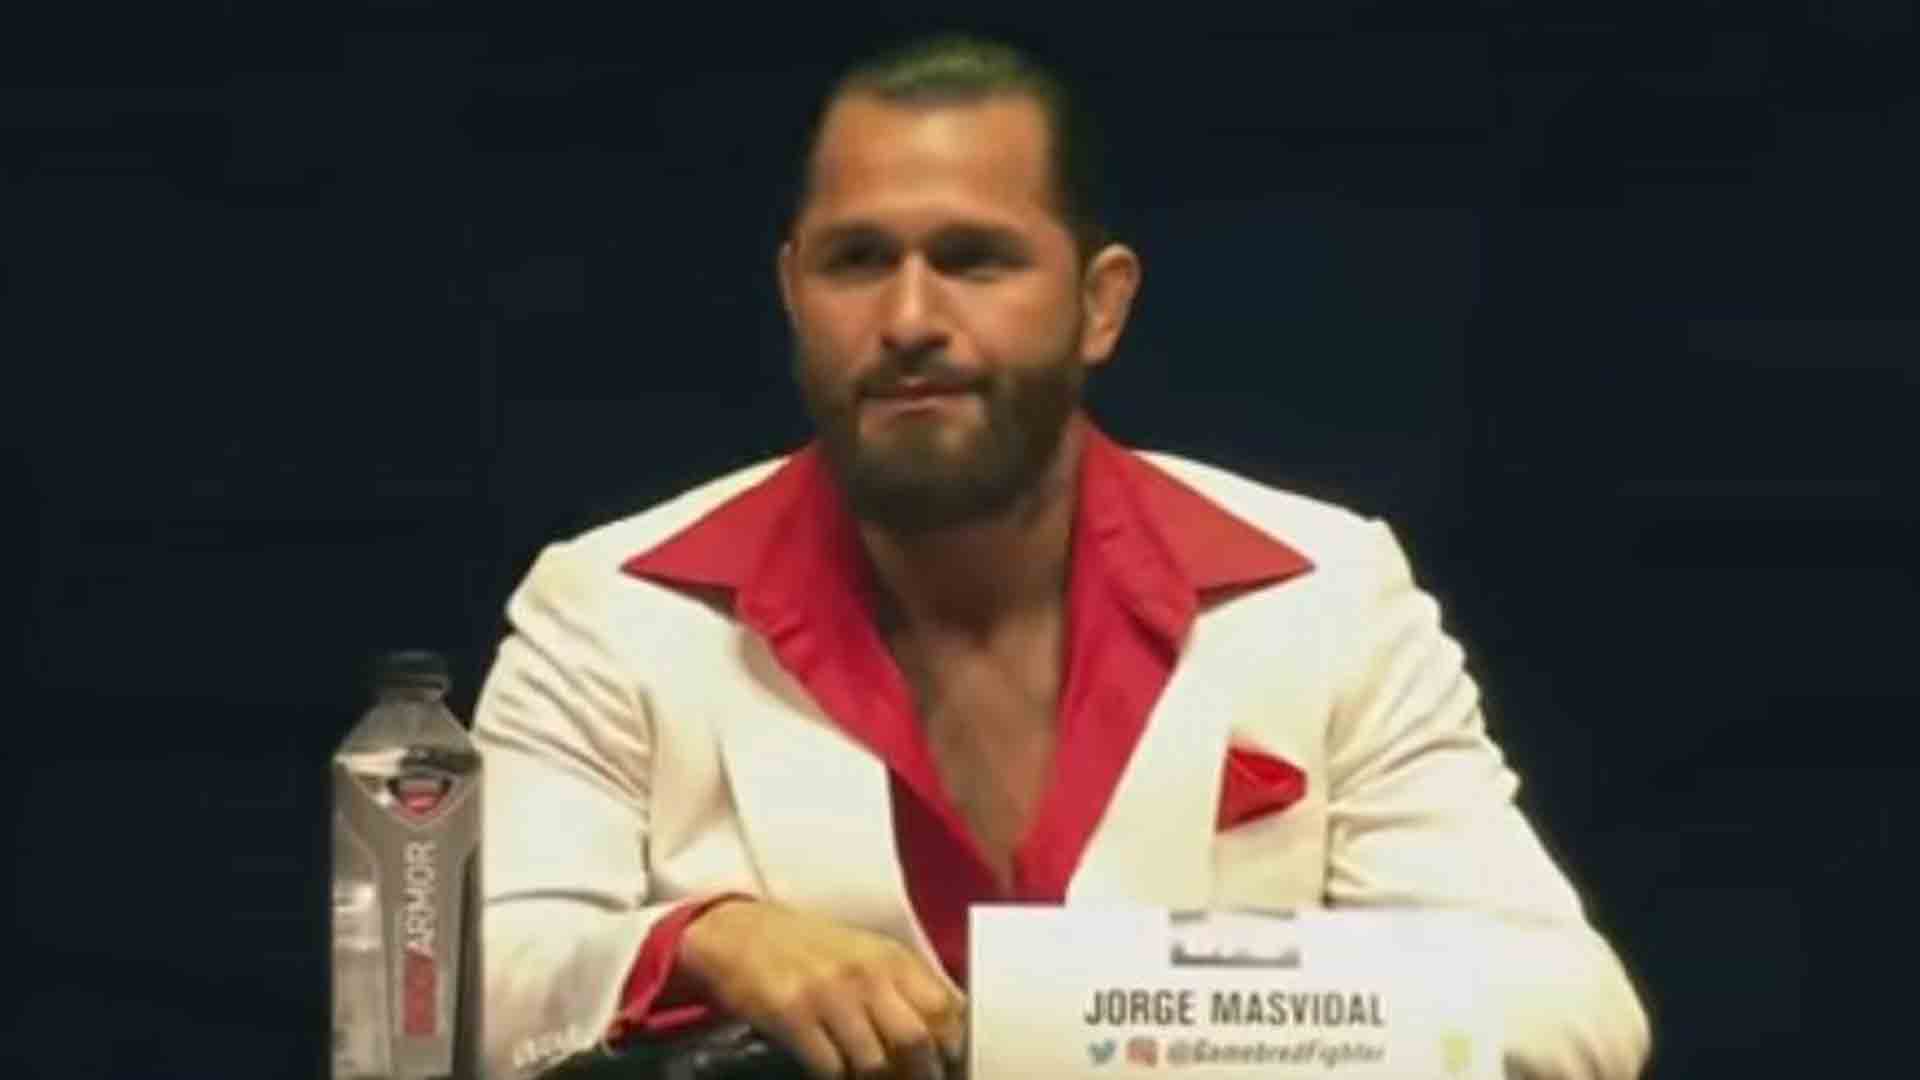 Jorge Masvidal